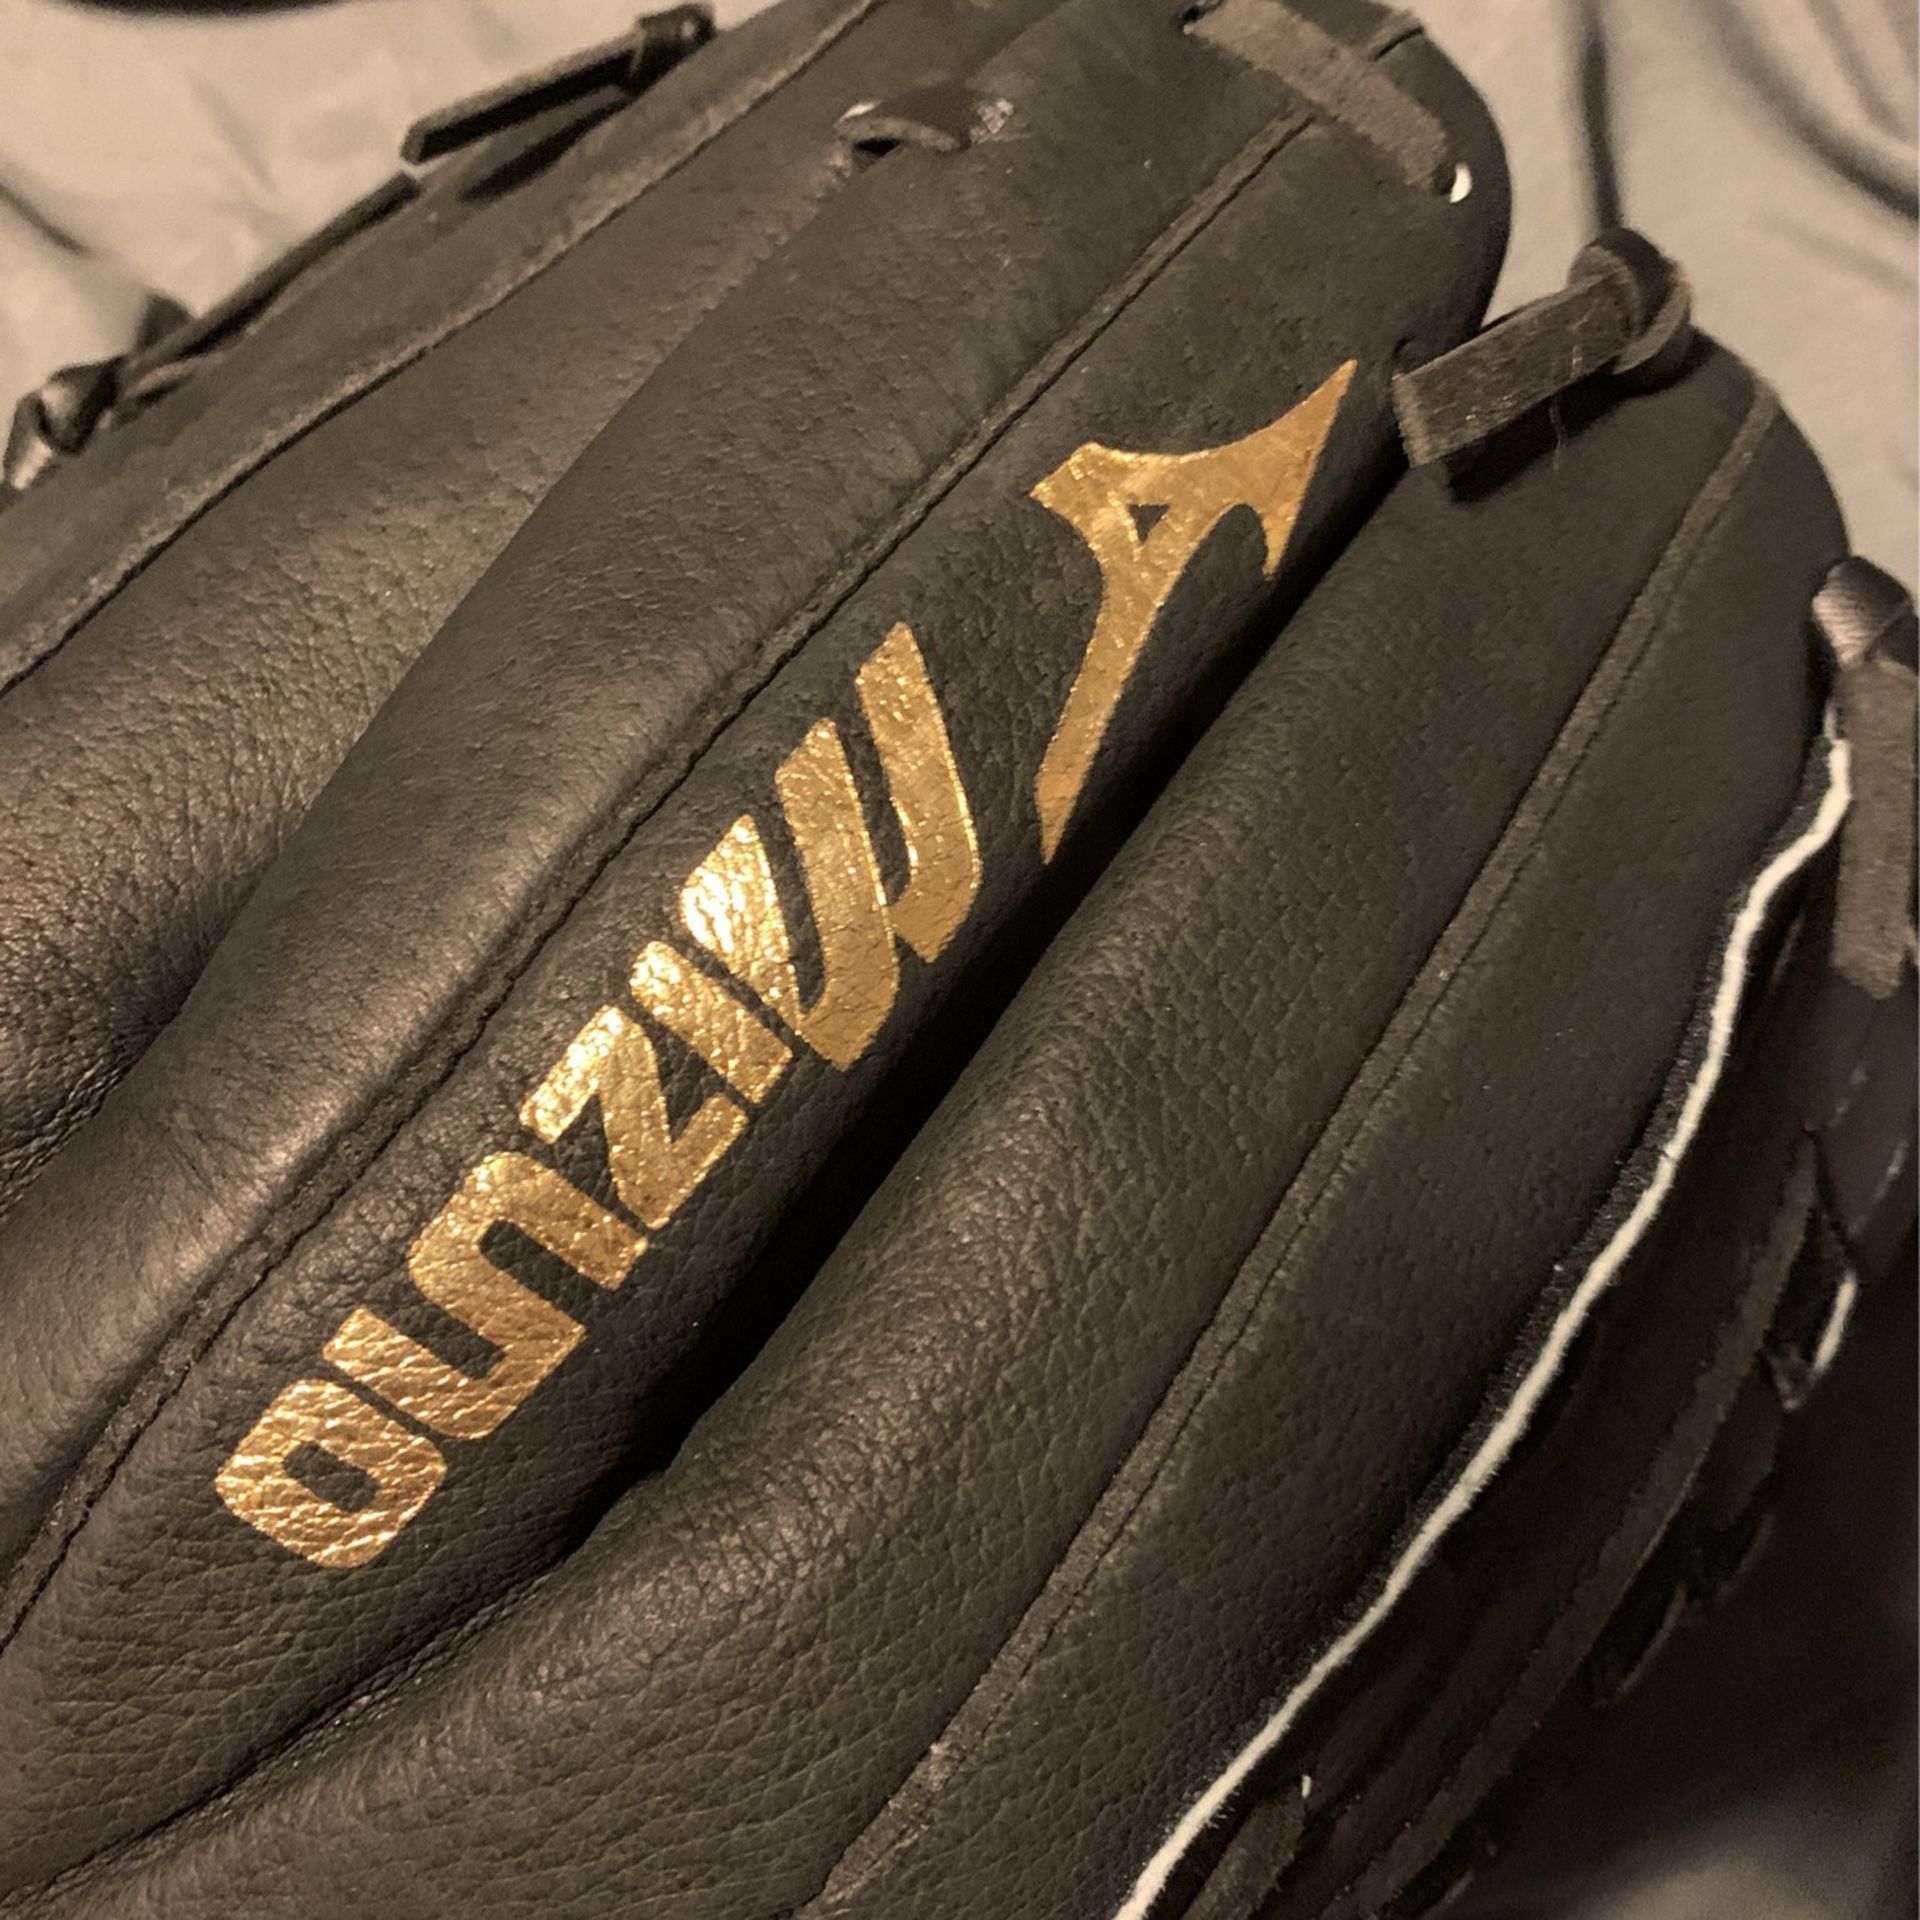 Baseball Glove-Mizuno